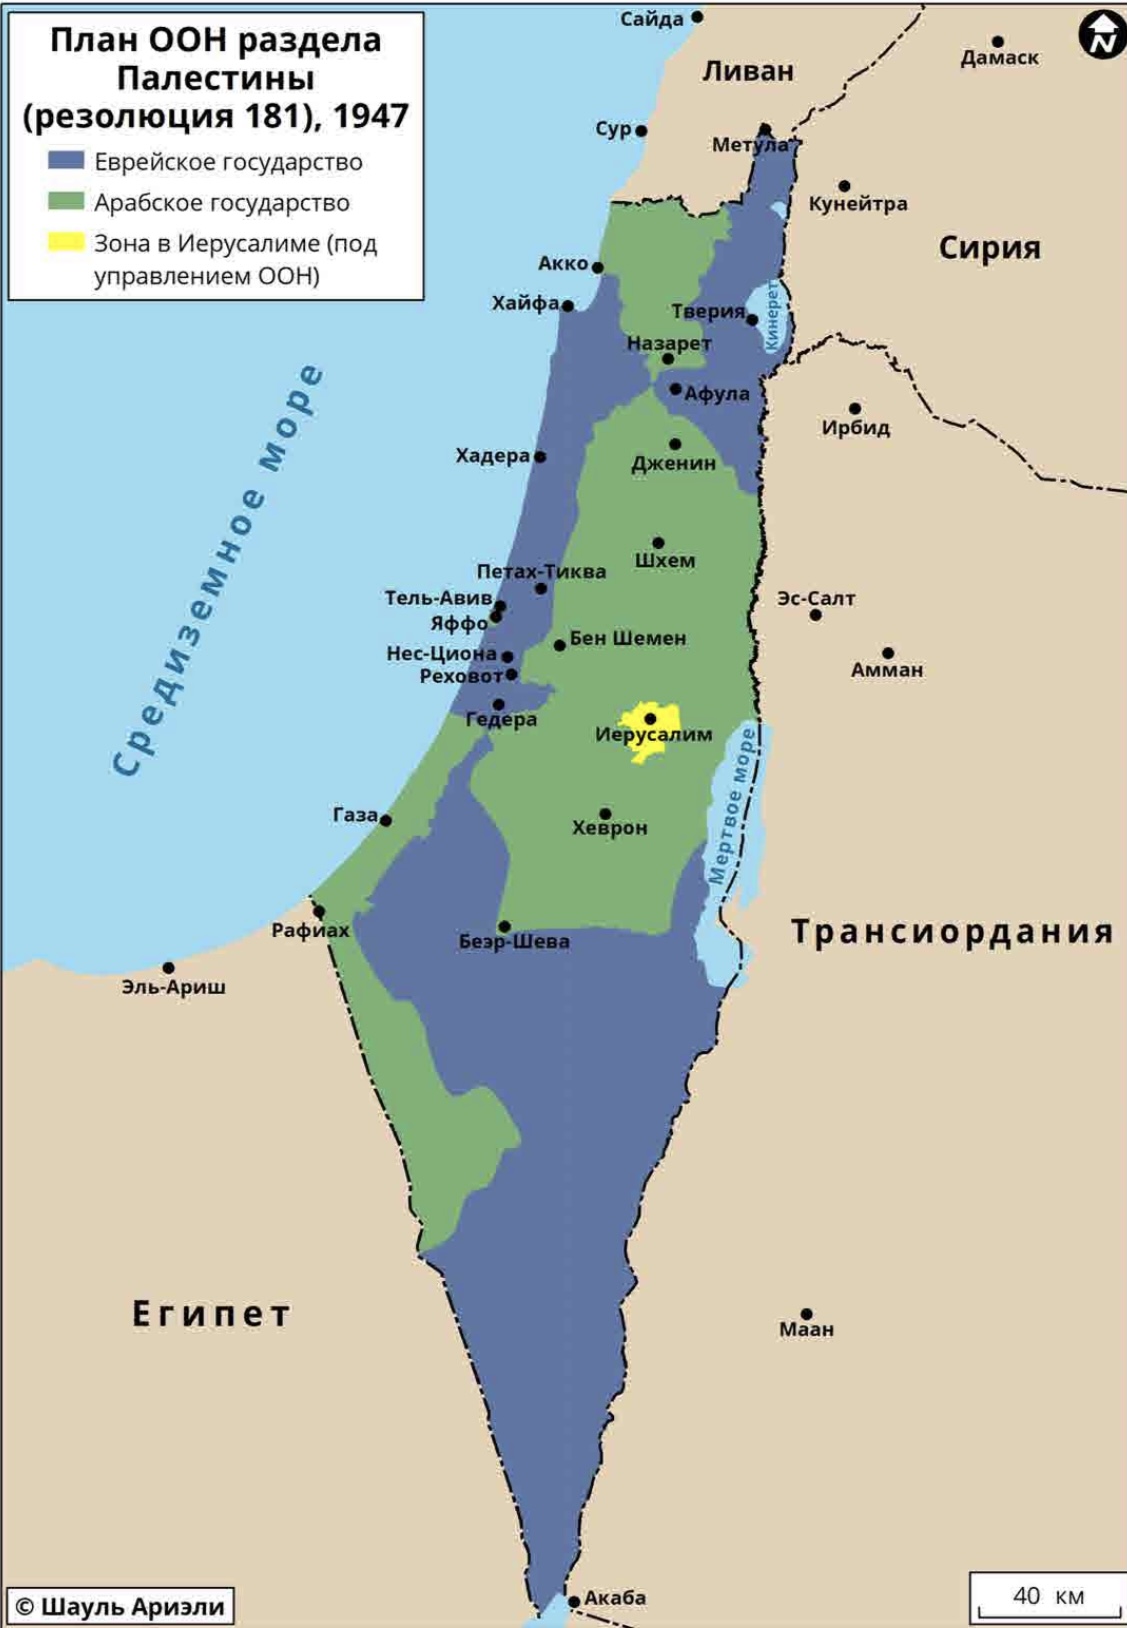 Шауль Ариэли: карта из «Атласа арабо-израильского конфликта»